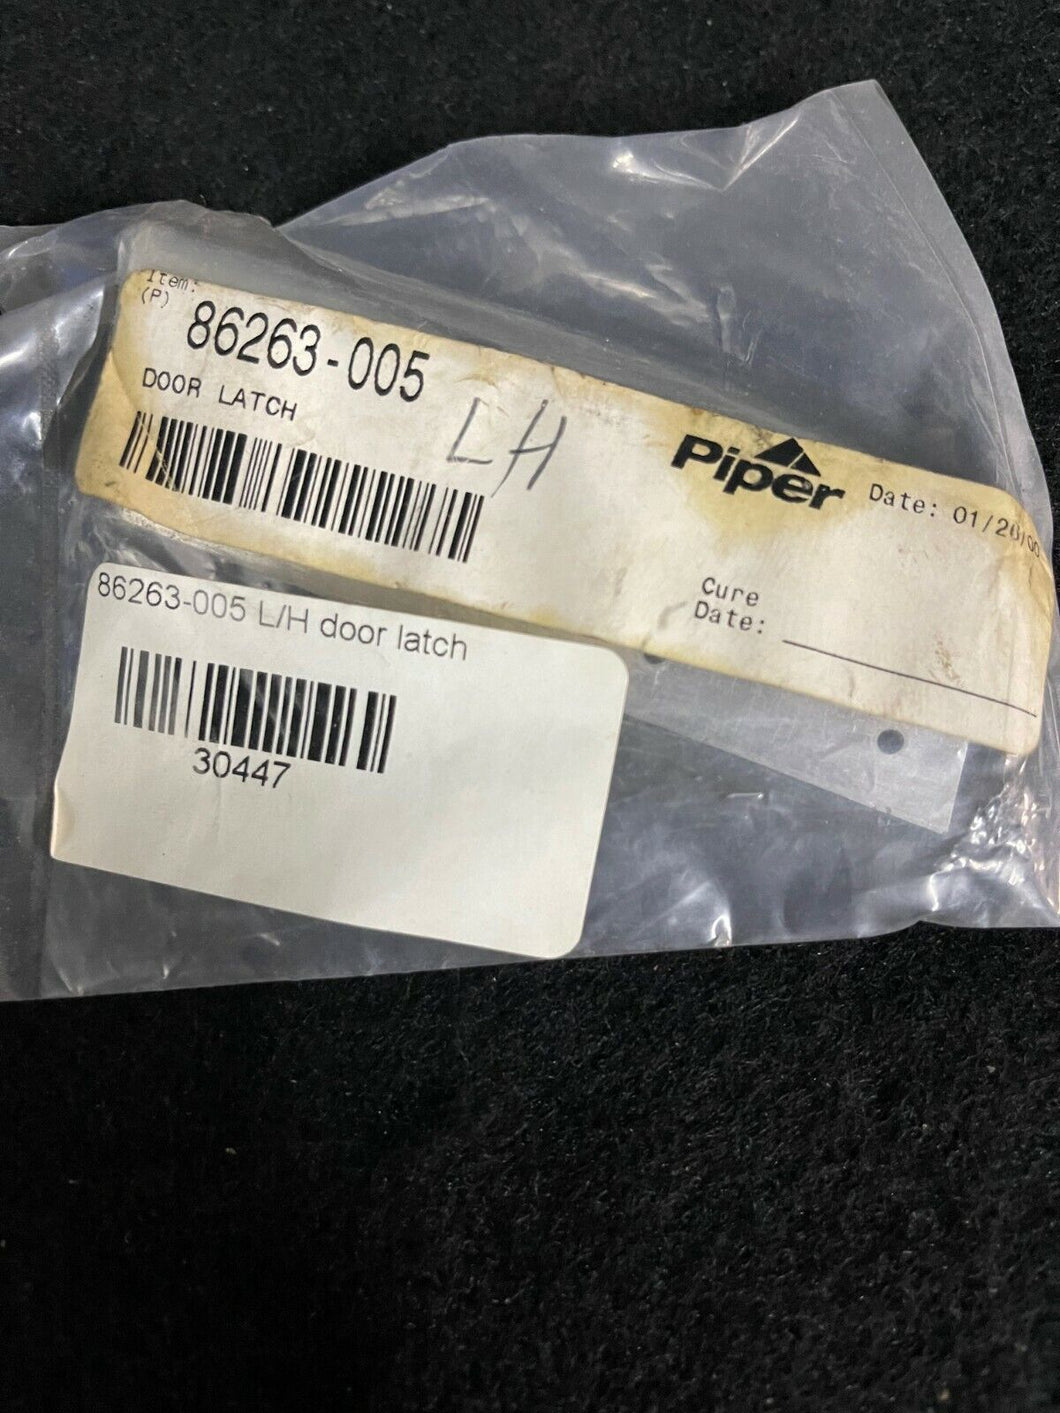 Piper 86263-005 Door Latch